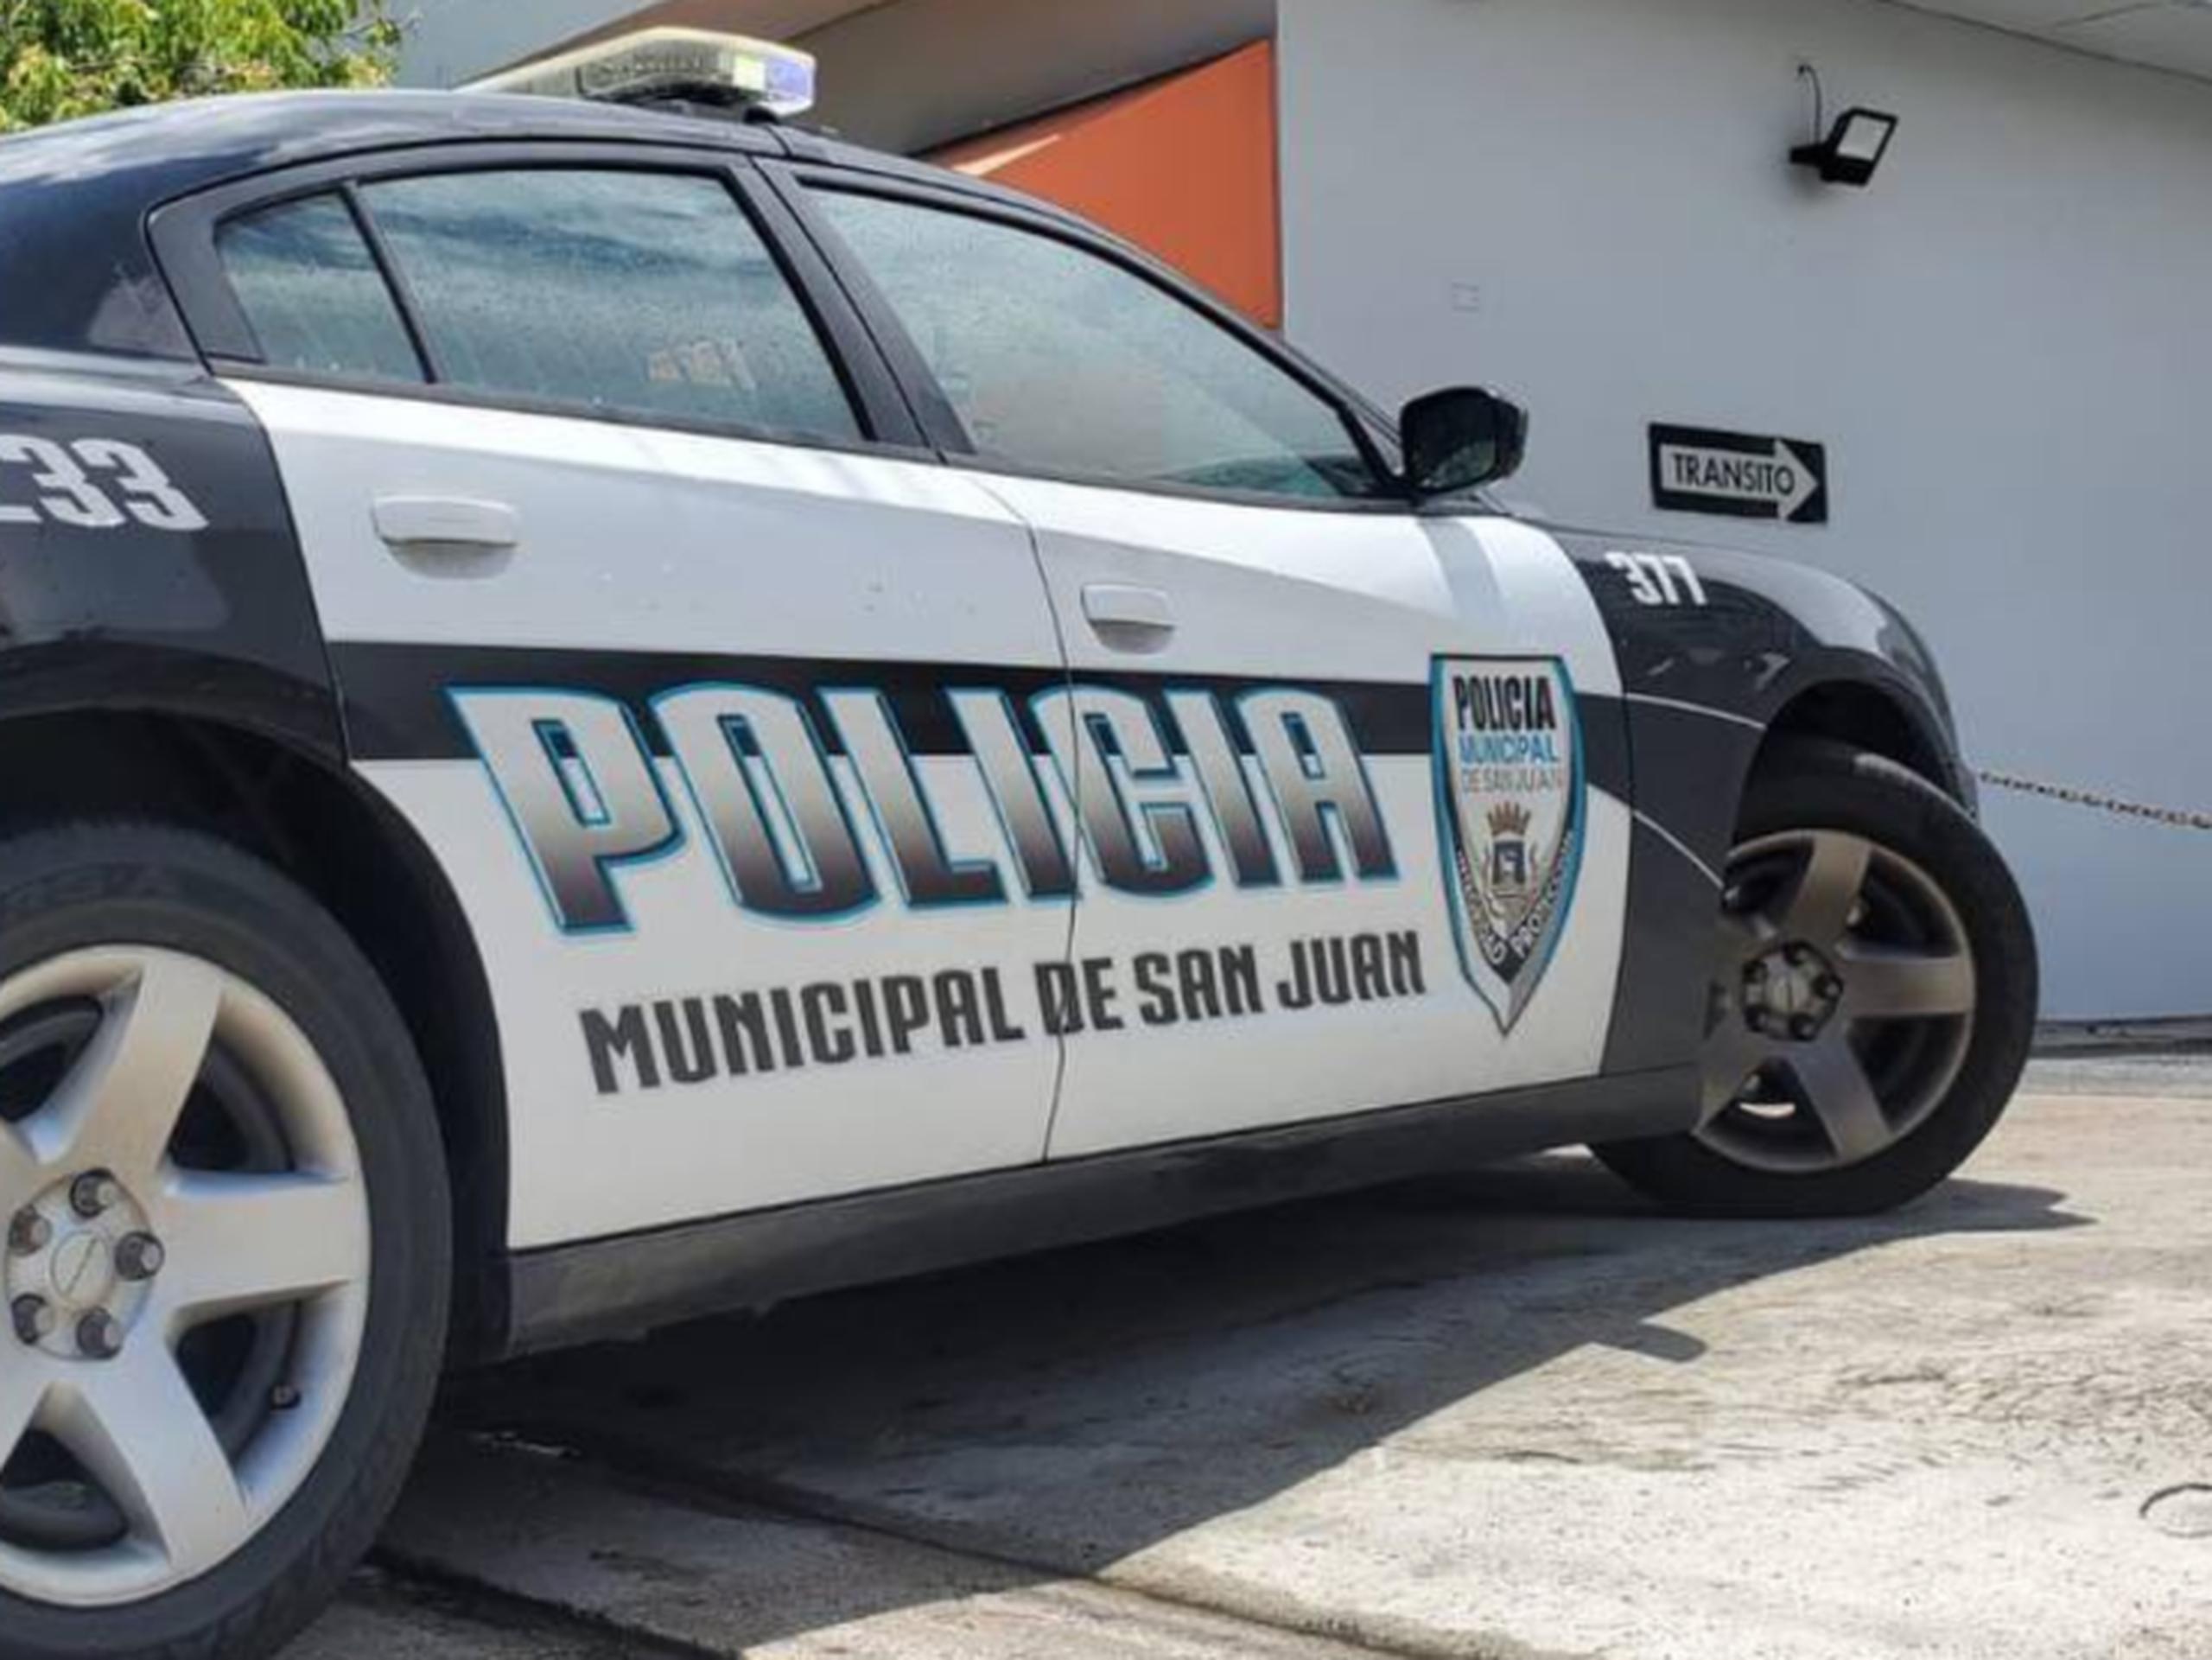 La Policía Municipal de San Juan intervino con el arresto.